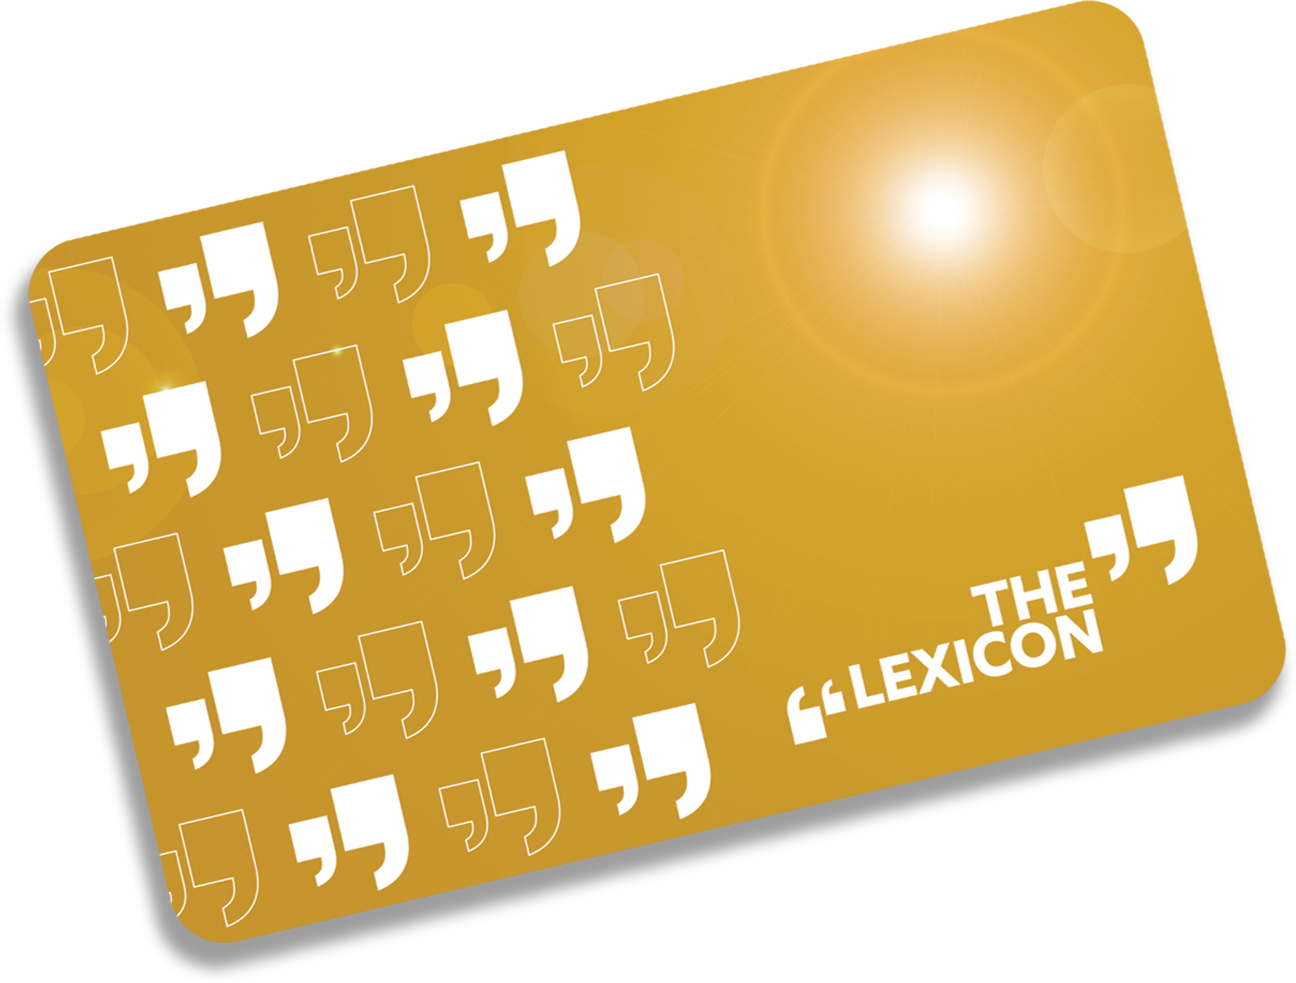 Lexicon Gift Card